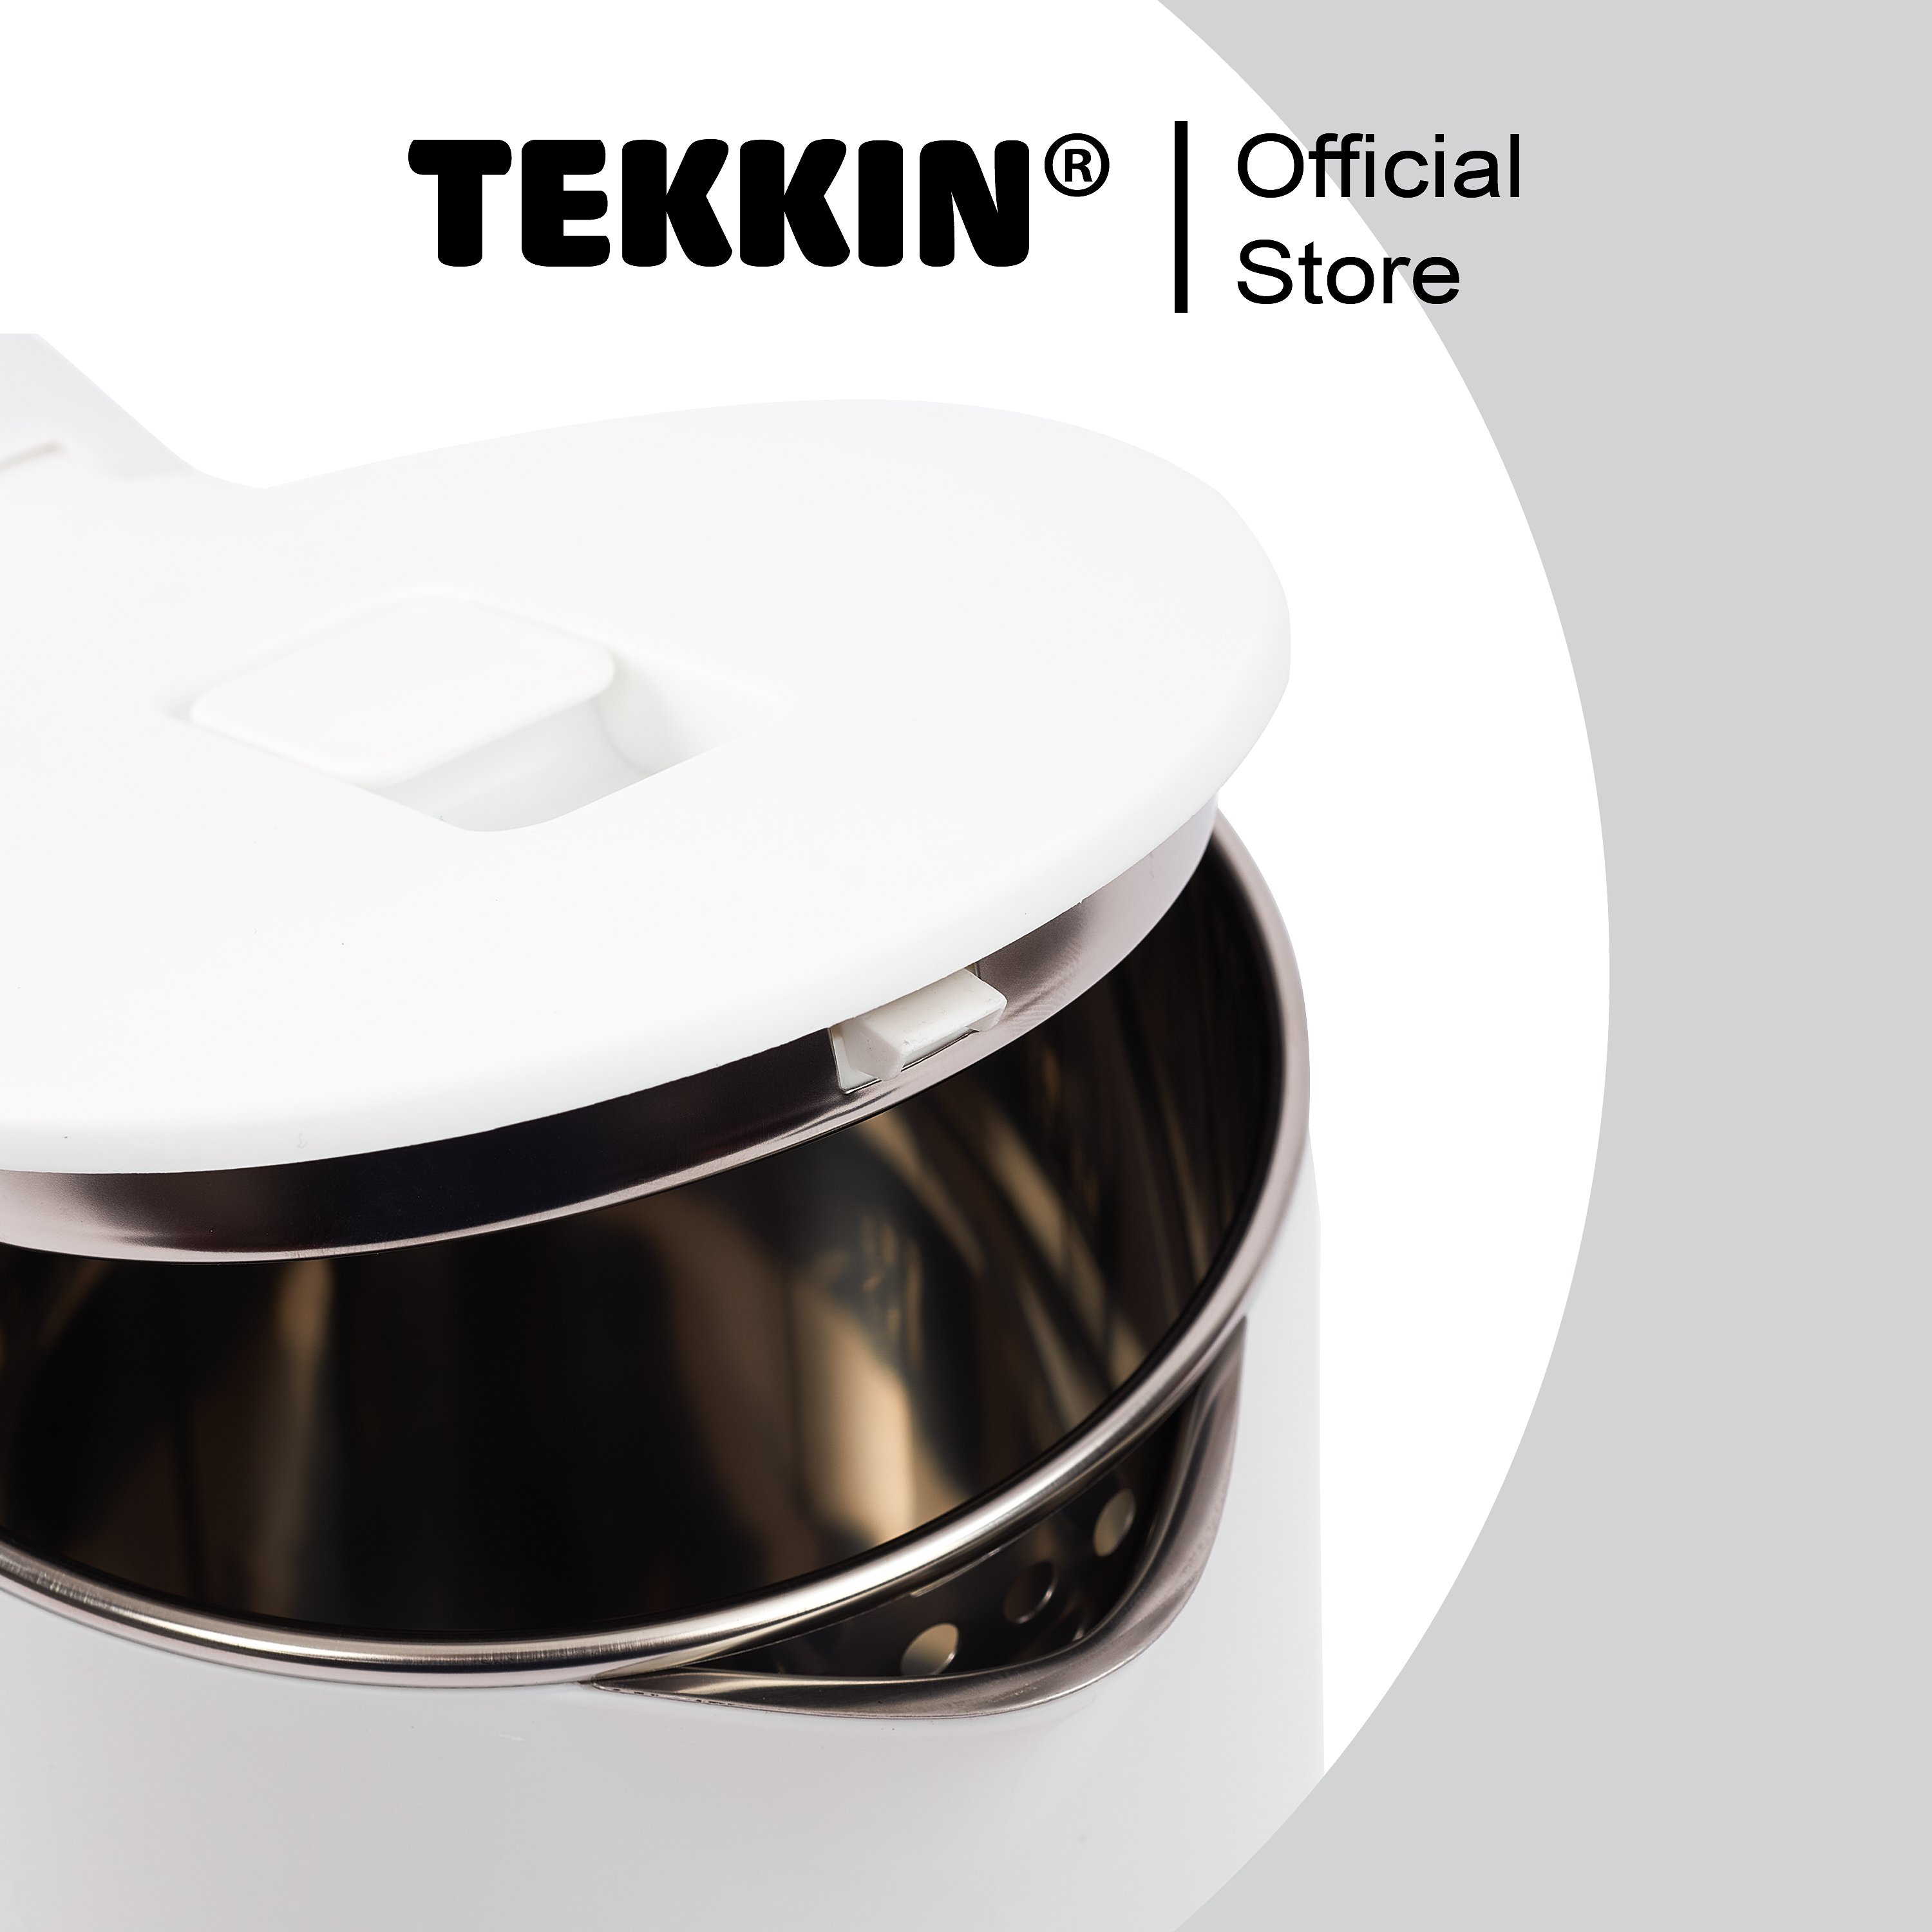 Ấm siêu tốc tự ngắt TEKKIN TI-2845 dung tích lớn 2.3L (dung tích sử dụng 1.8L) 2 lớp công suất 1500W bảo hành 12 tháng - hàng nhập khẩu